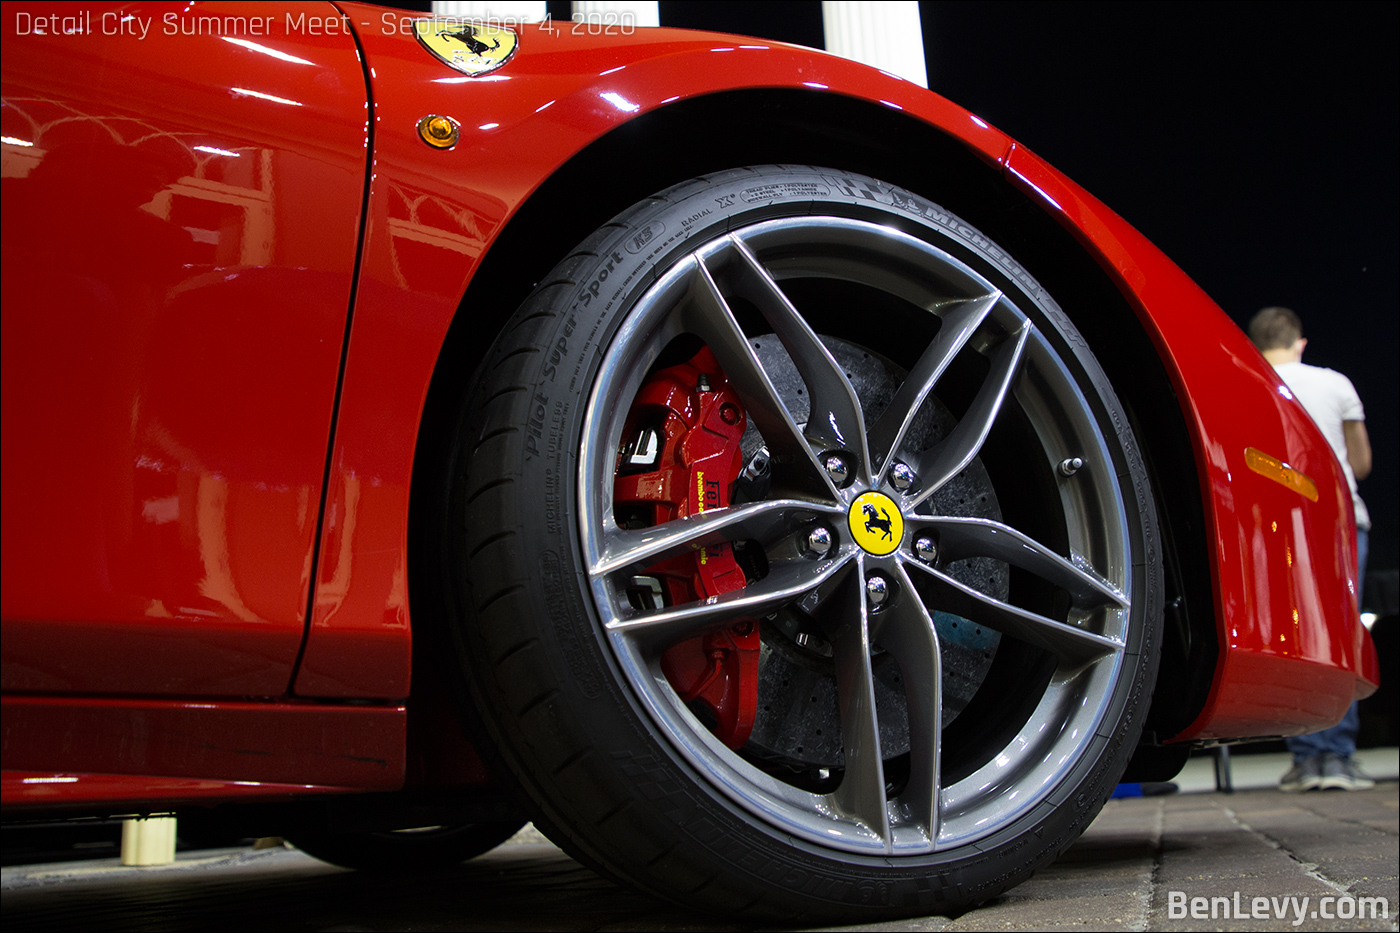 Detail of a Ferrari 488 wheel